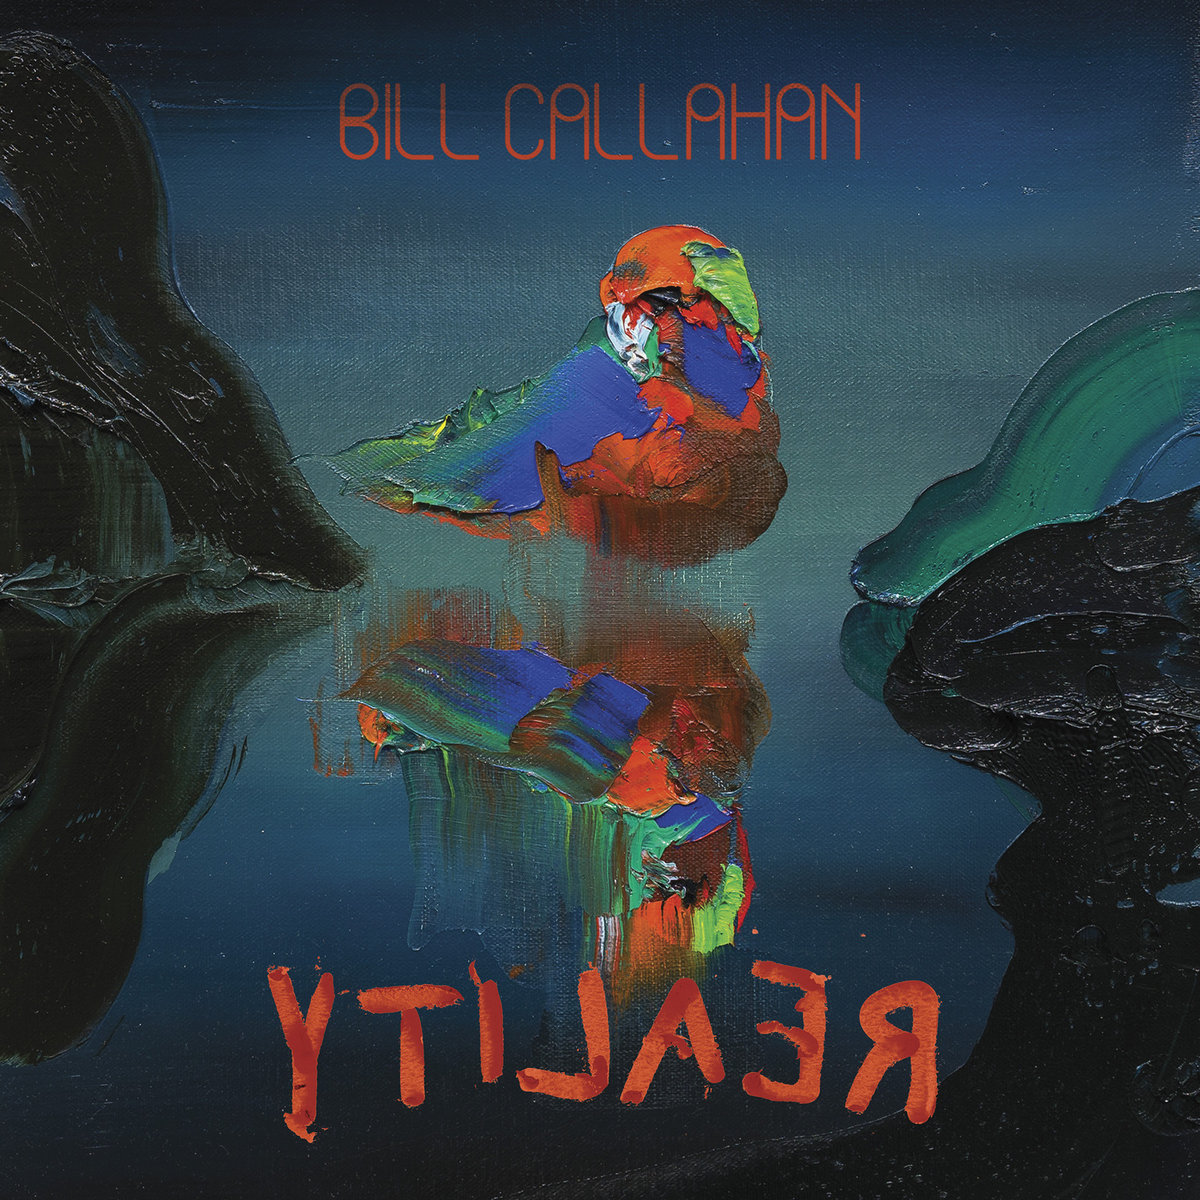 Bill Callahan “YTILAER” 2LP 1